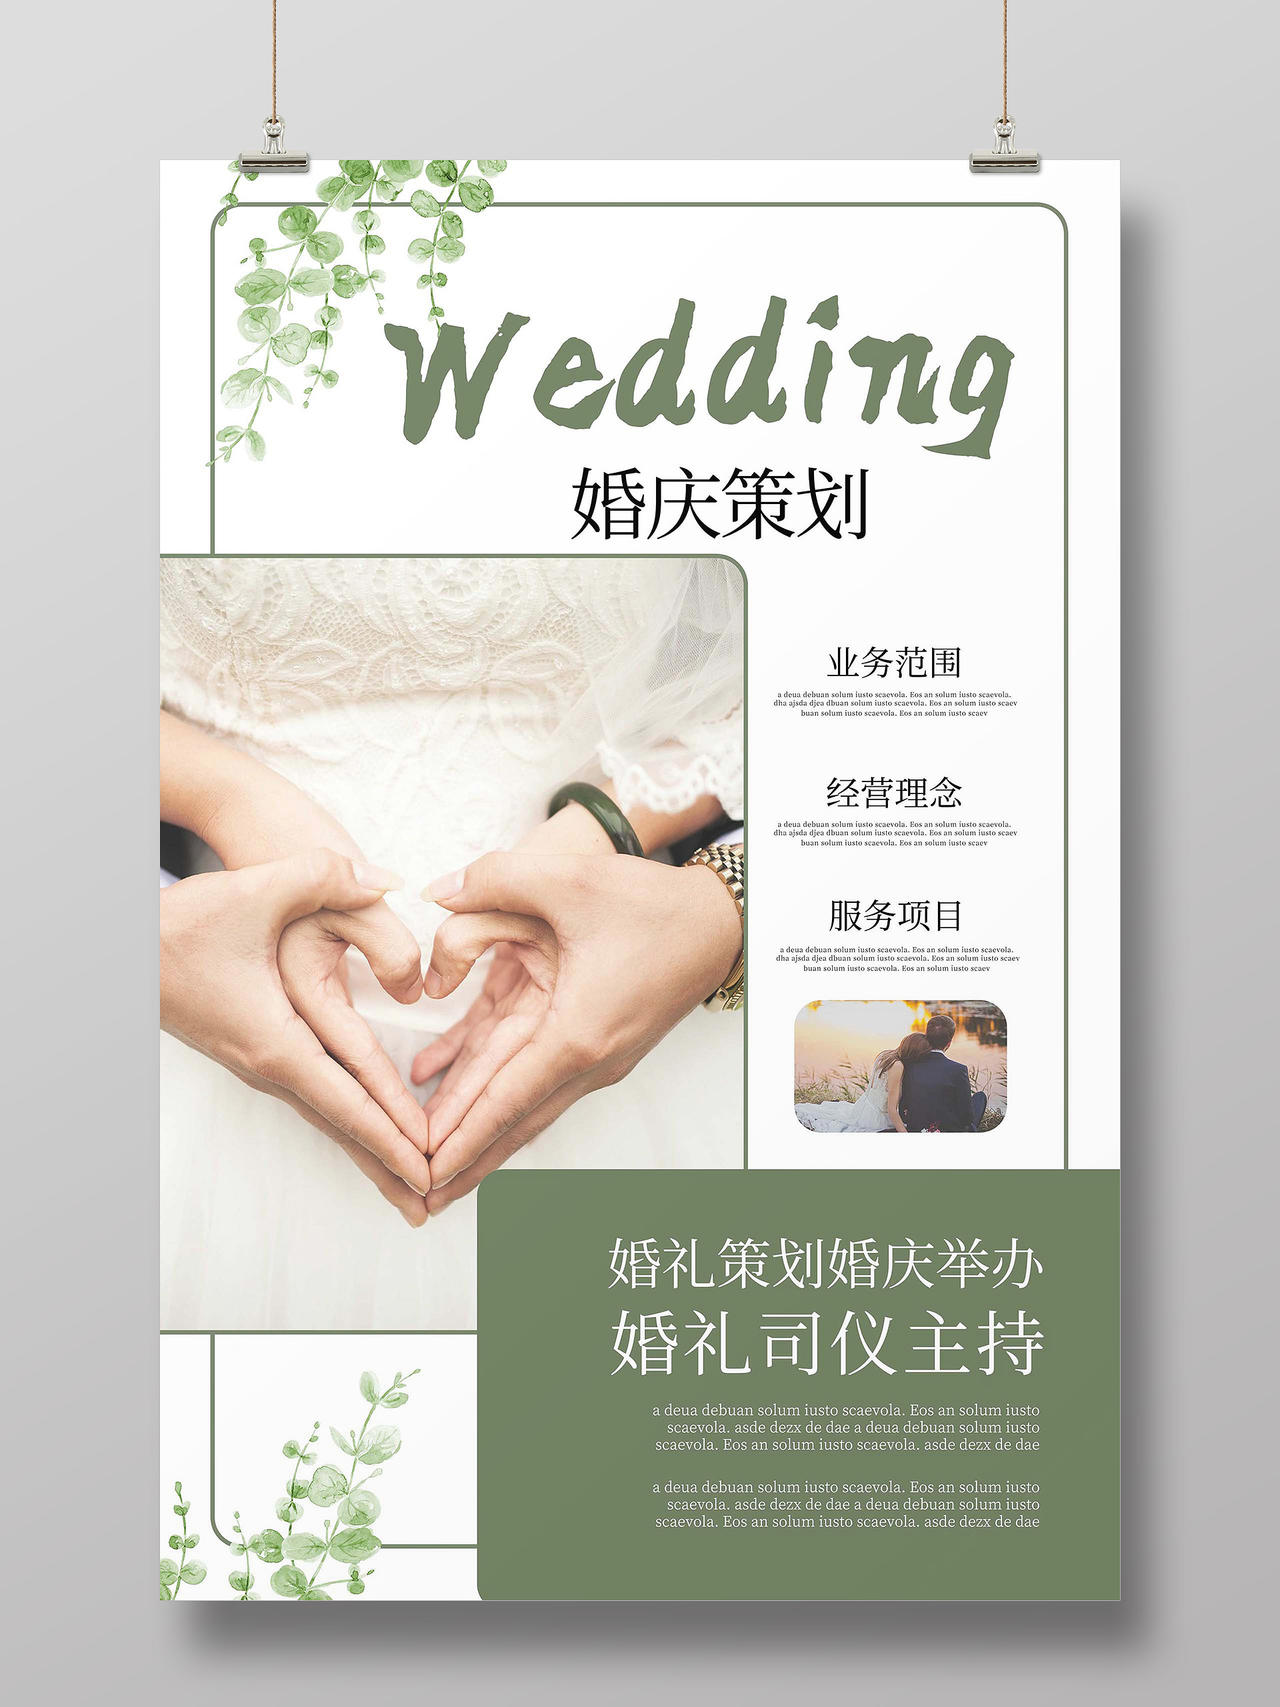 绿色创意简洁欧美风婚庆策划宣传海报设计婚礼策划